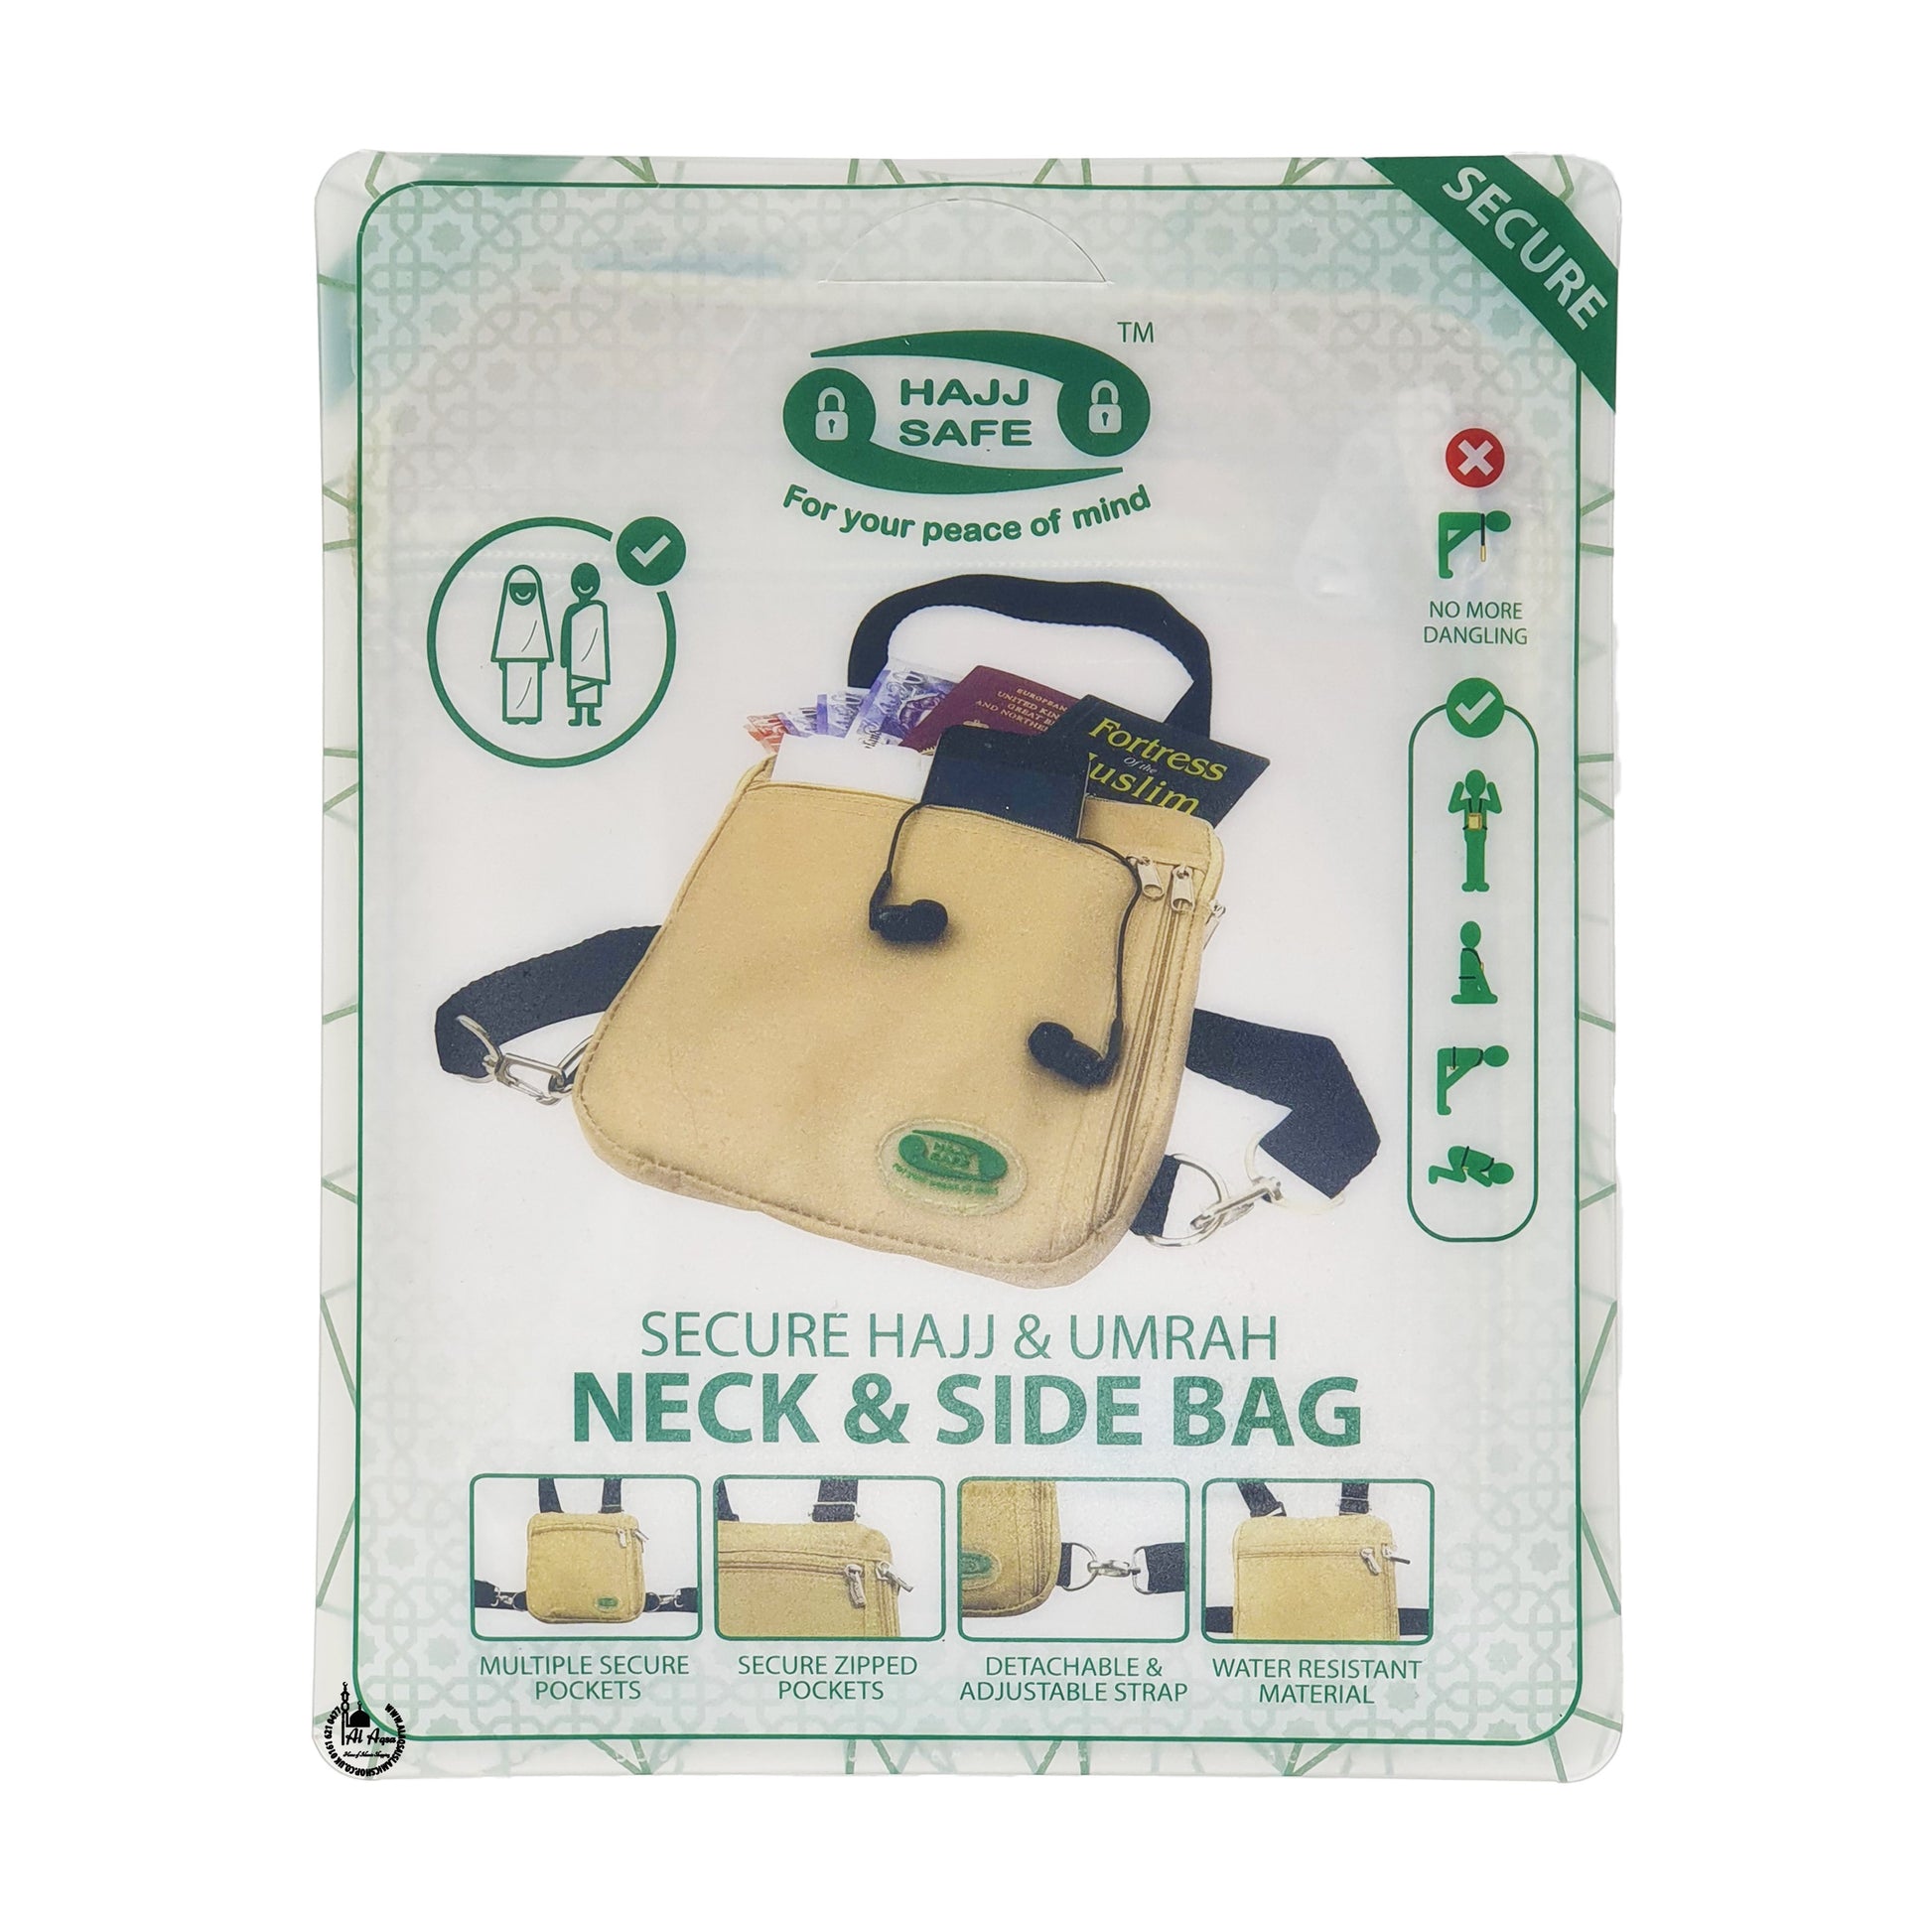 Secure Hajj & Umrah Neck & Side Bag